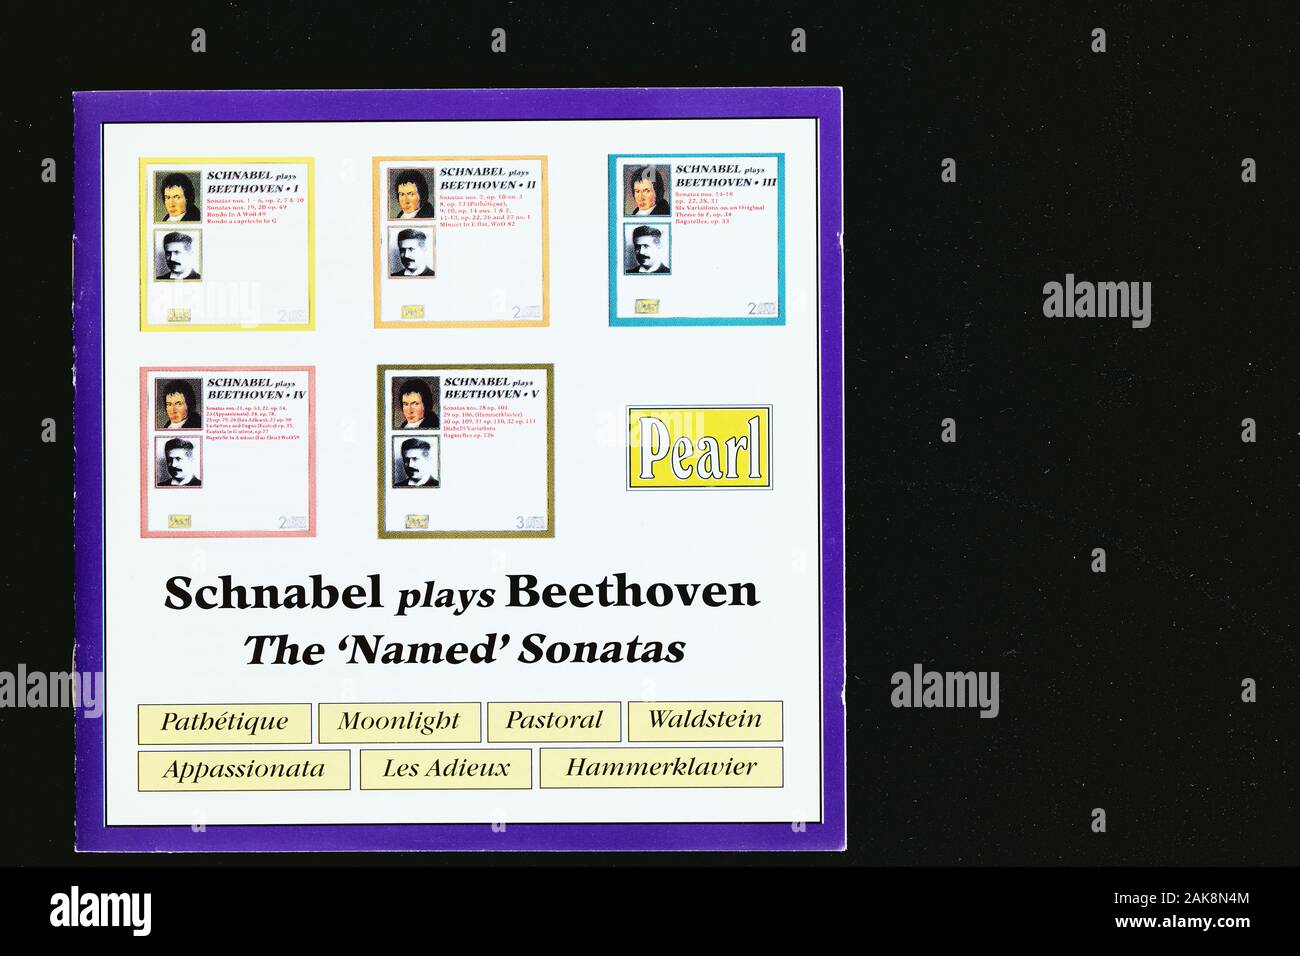 Cubierta de la música histórica grabación en CD de Schnabel jugando el 'named' sonatas para piano del compositor Beethoven. Foto de stock